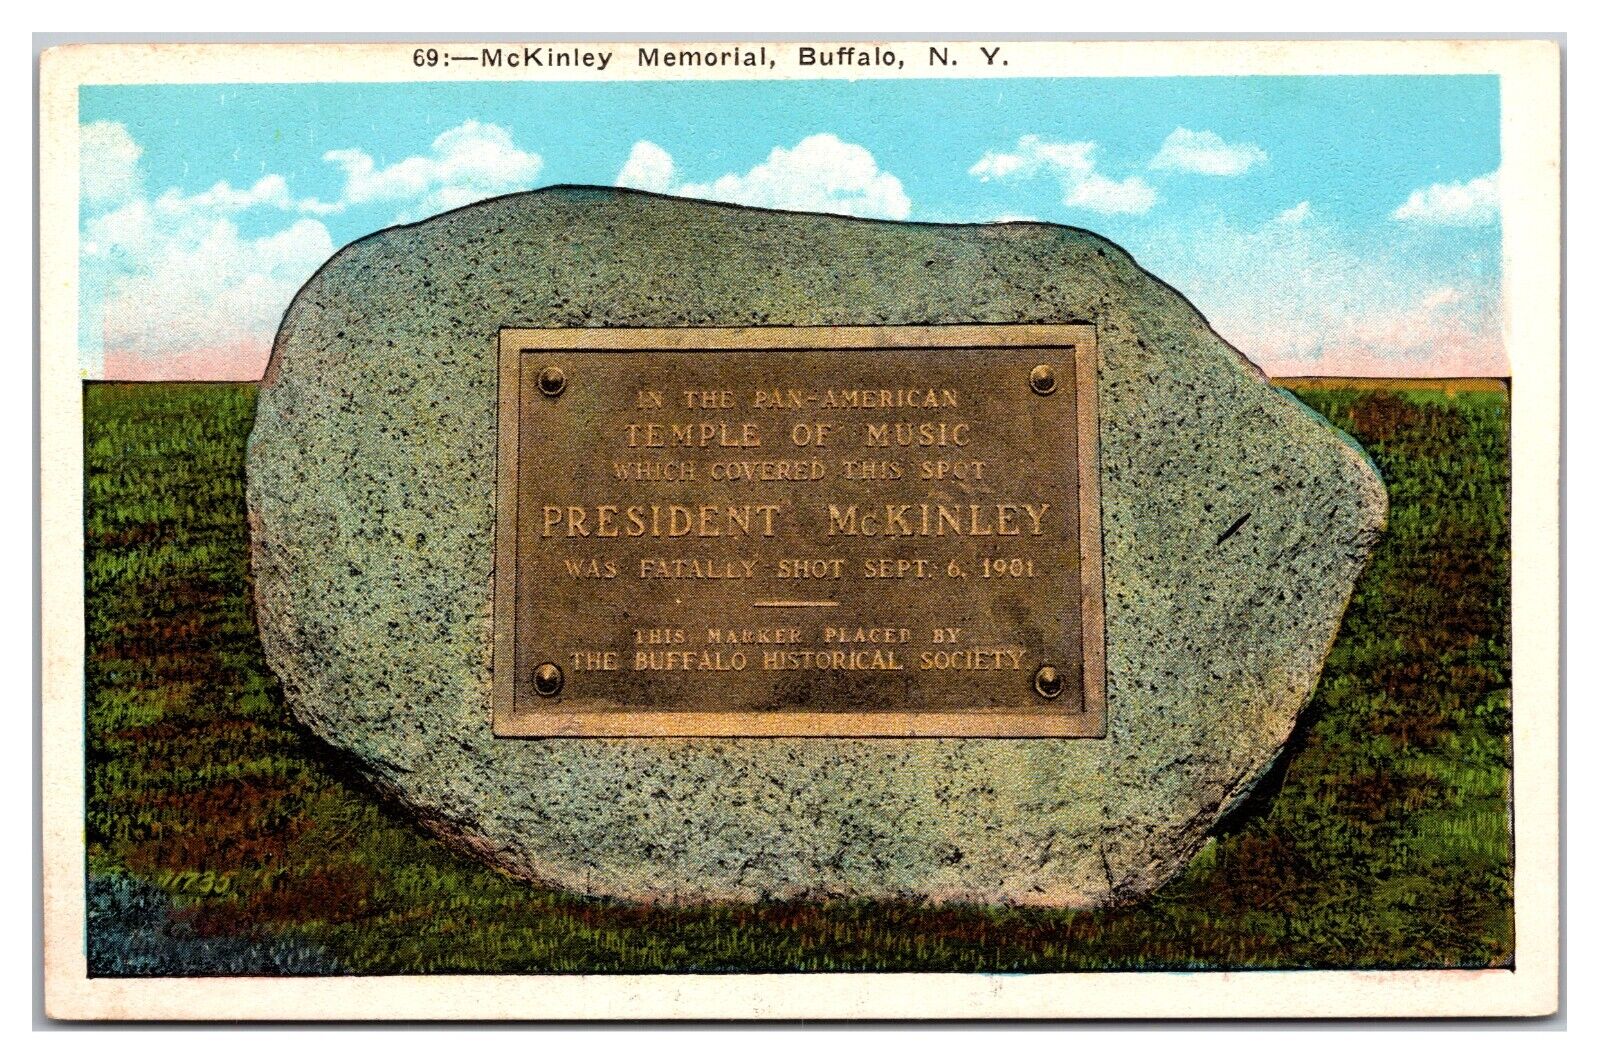 McKinley Memorial, Buffalo, New York